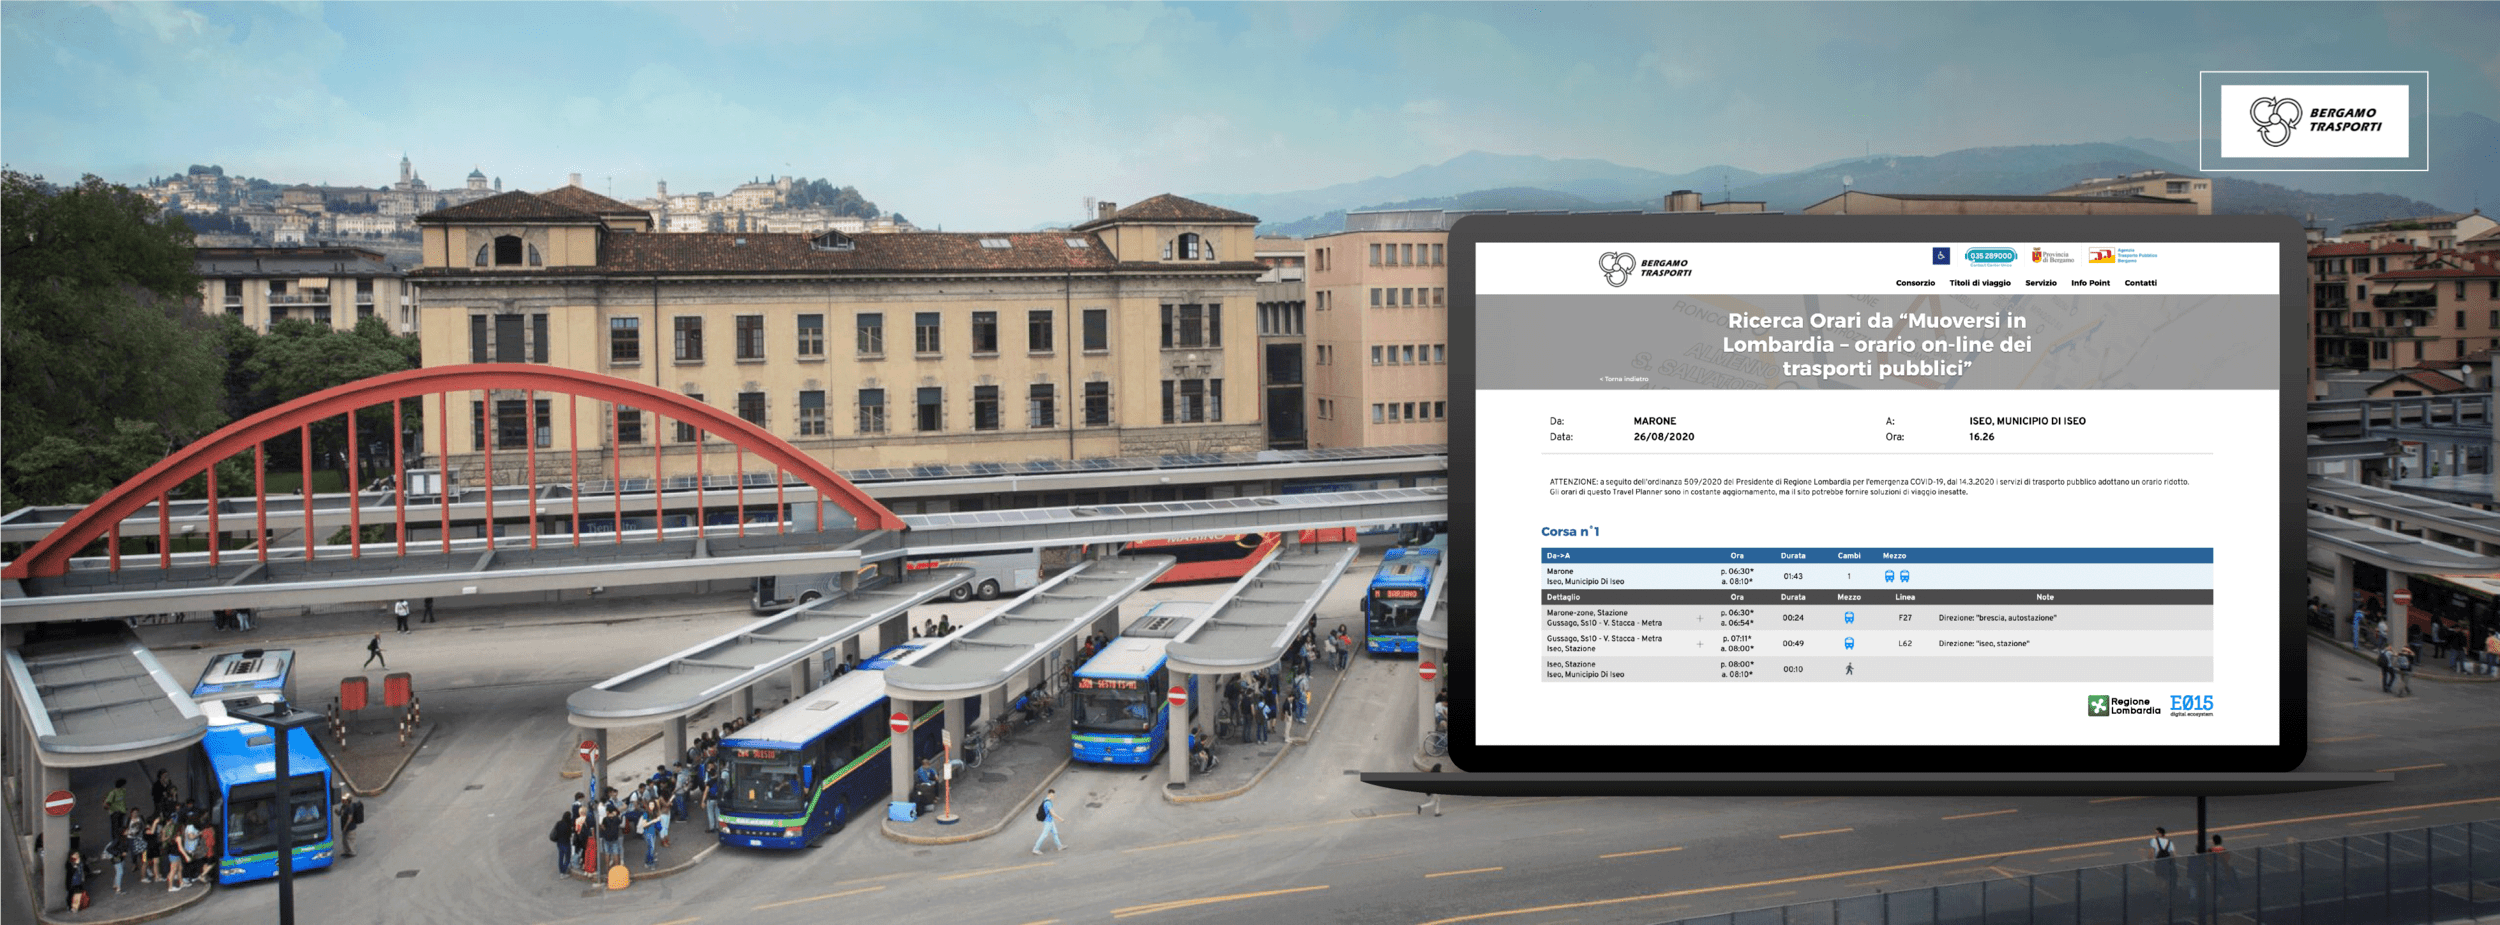 Nuova applicazione E015 Bergamo Trasporti